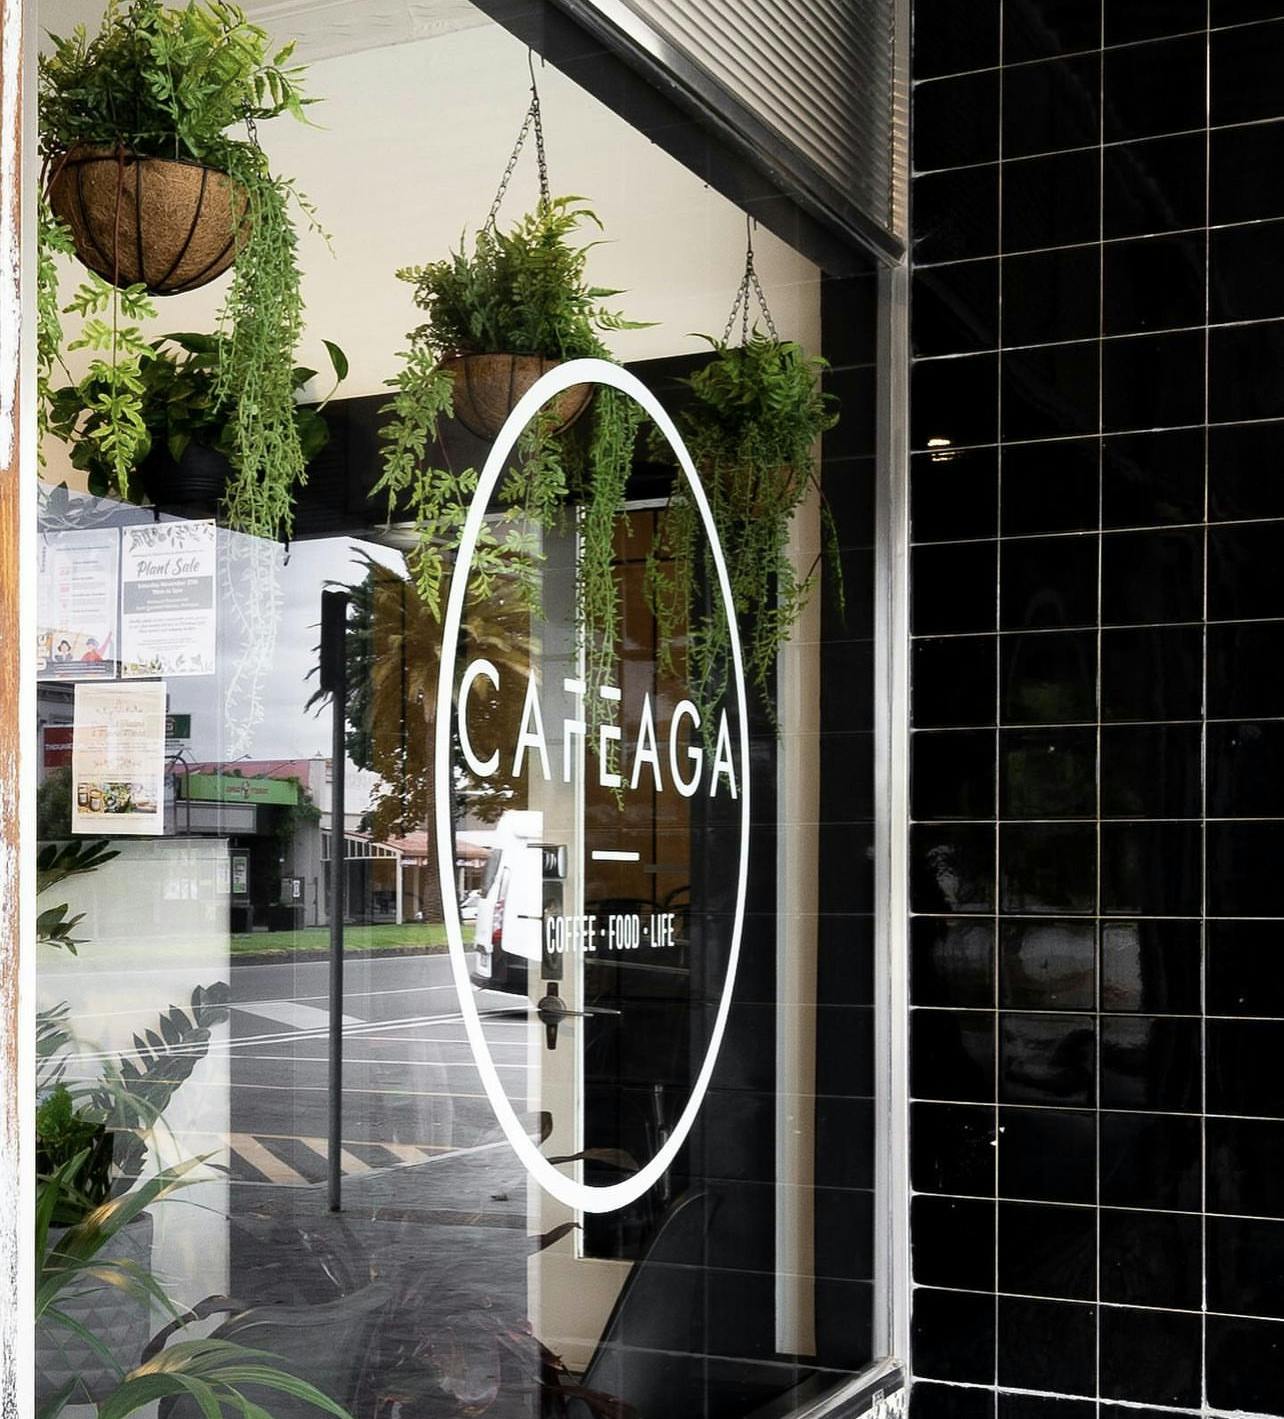 Cafe AGA open 7 days